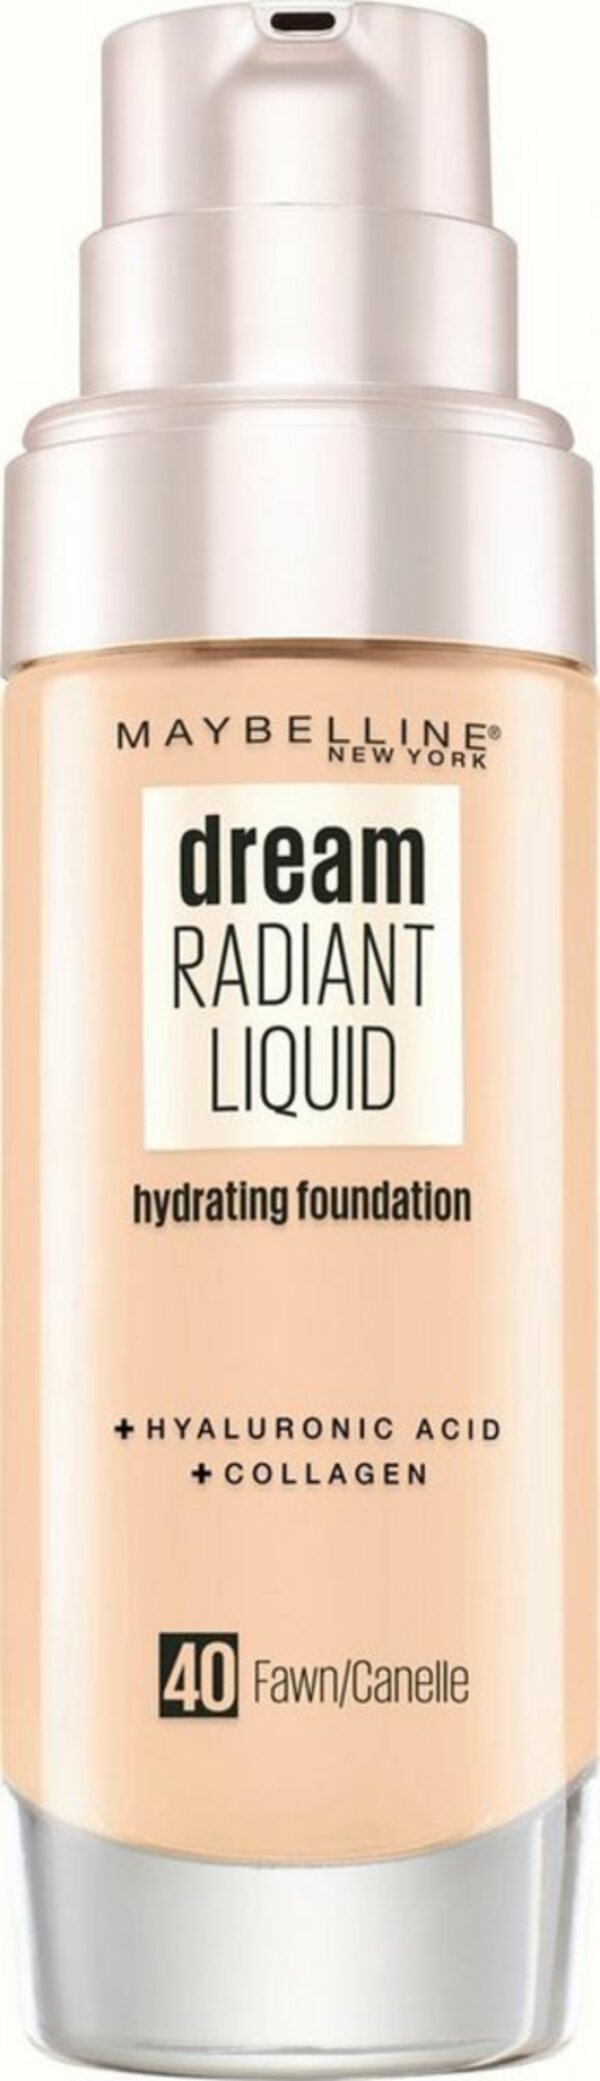 Bild 1 von MAYBELLINE NEW YORK Foundation Dream Radiant Liquid